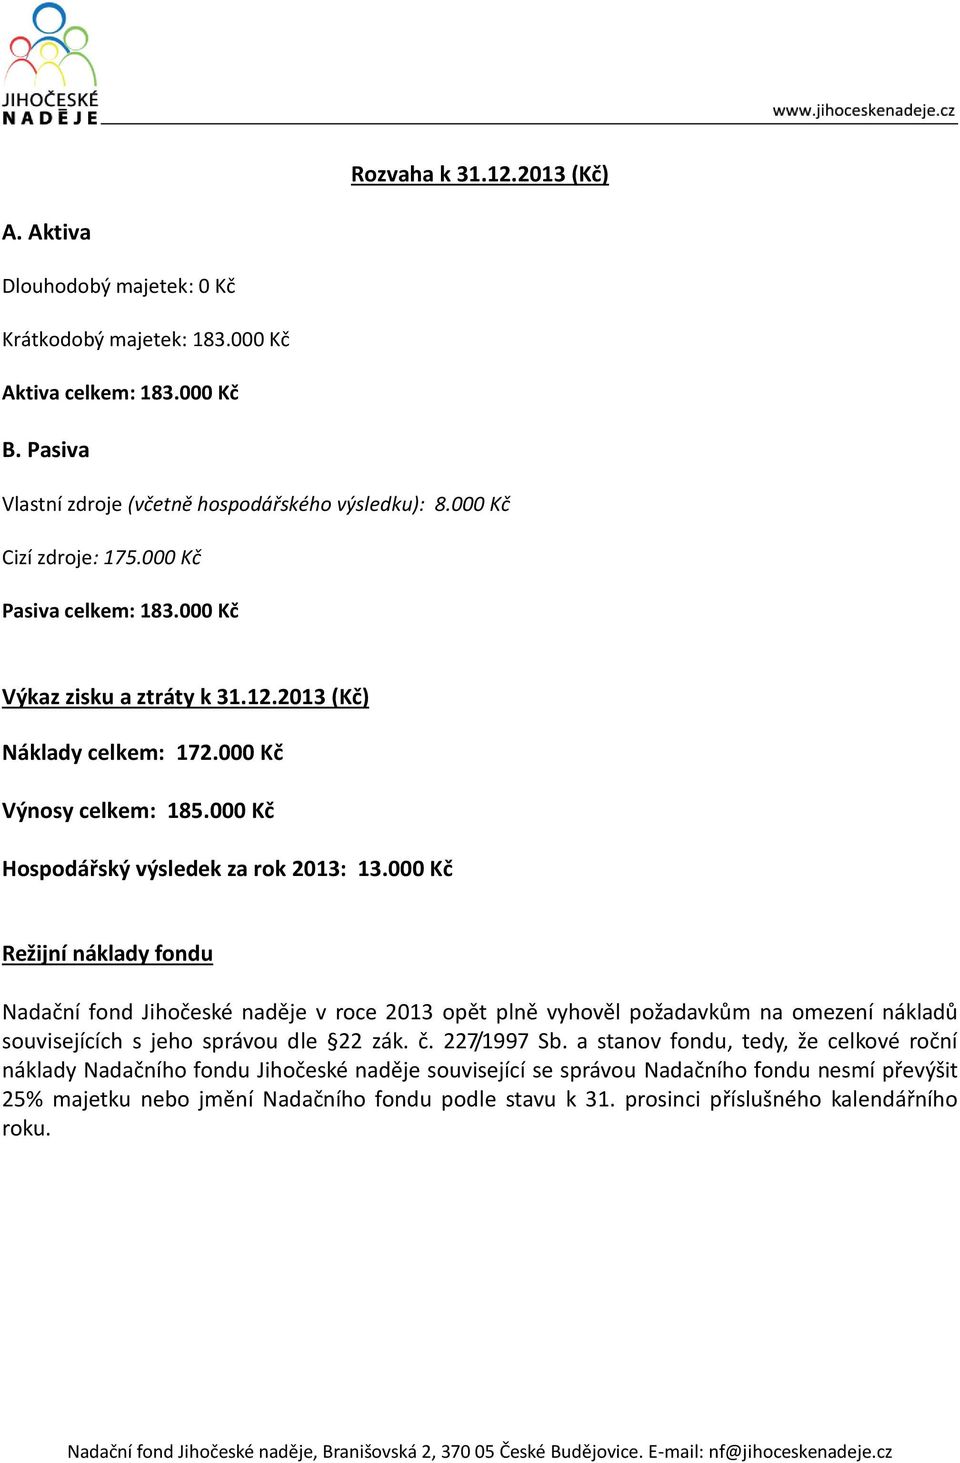 000 Kč Režijní náklady fondu Nadační fond Jihočeské naděje v roce 2013 opět plně vyhověl požadavkům na omezení nákladů souvisejících s jeho správou dle 22 zák. č. 227/1997 Sb.